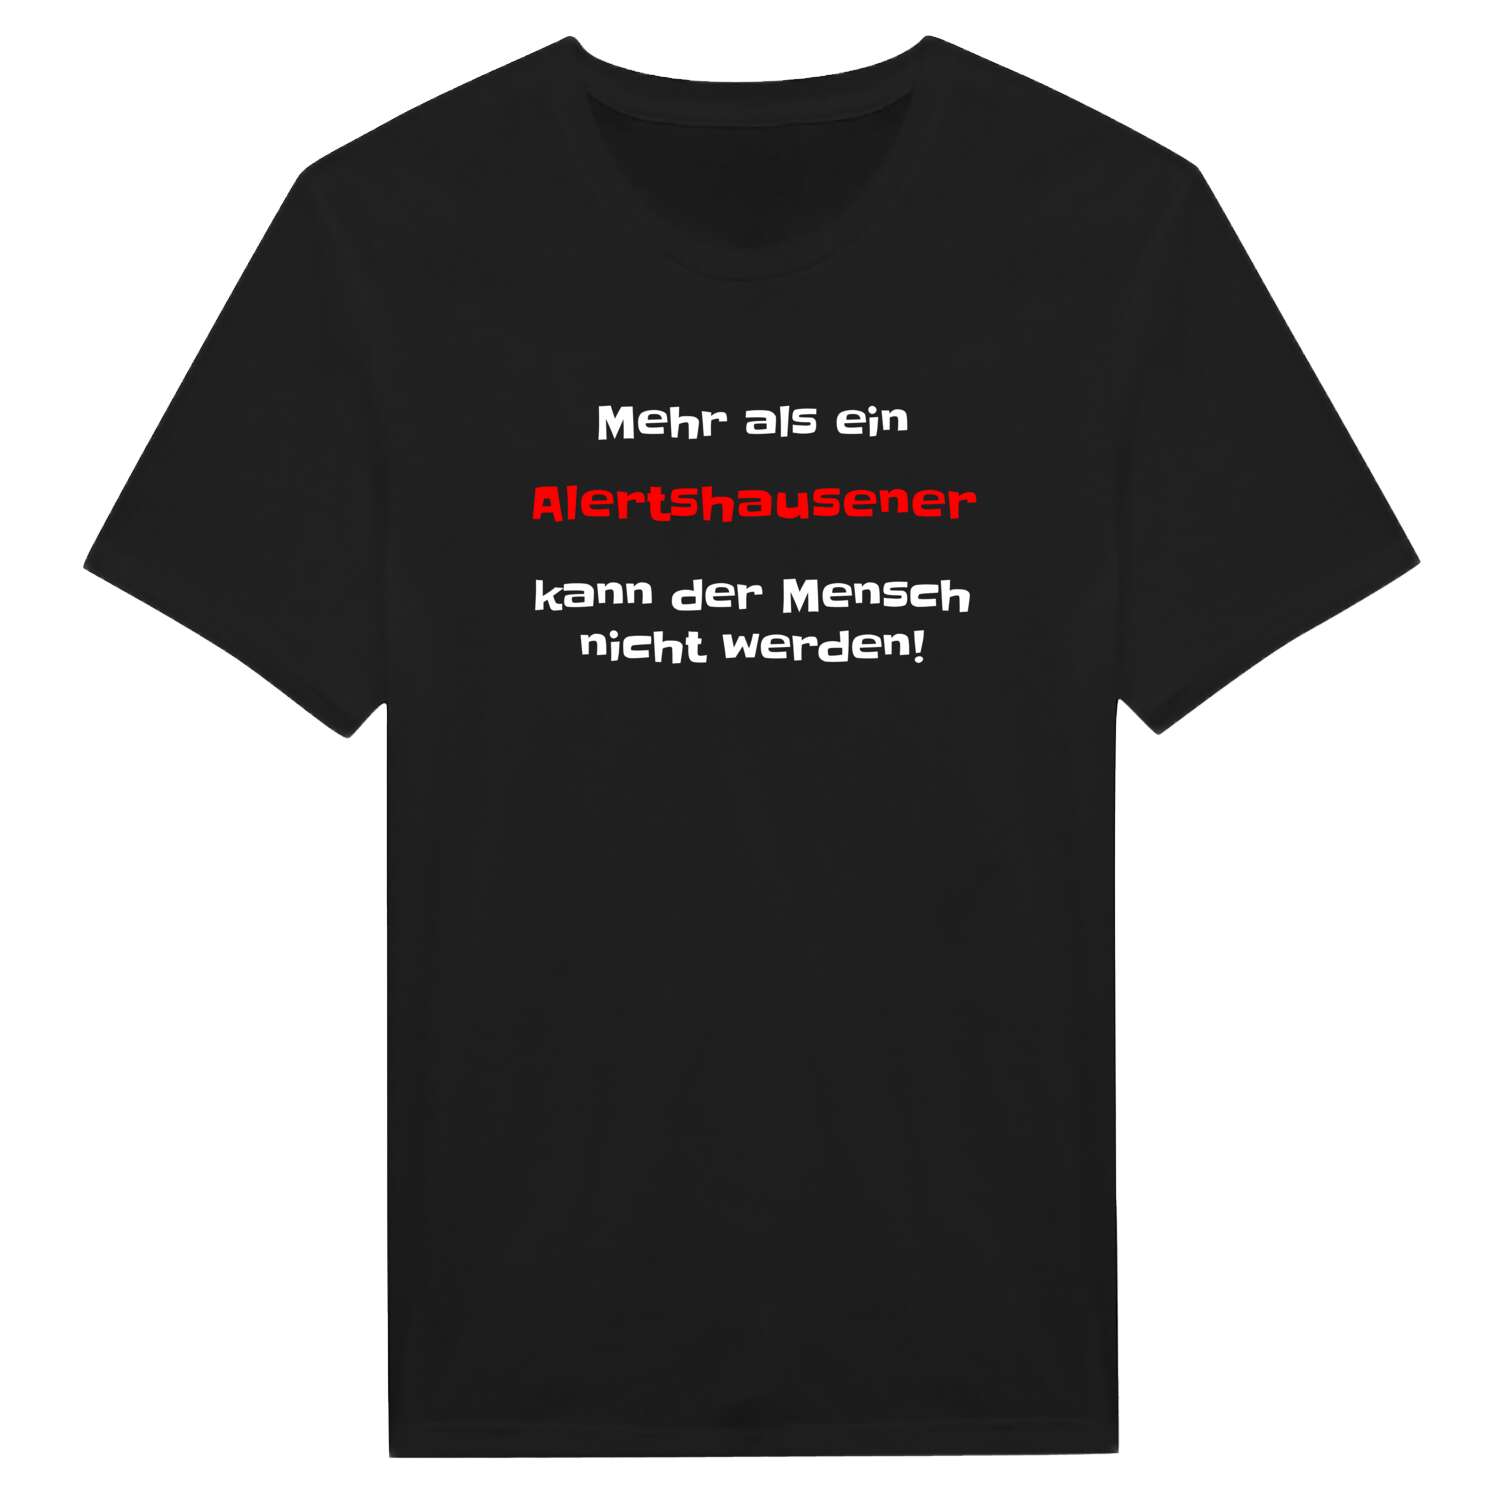 Alertshausen T-Shirt »Mehr als ein«